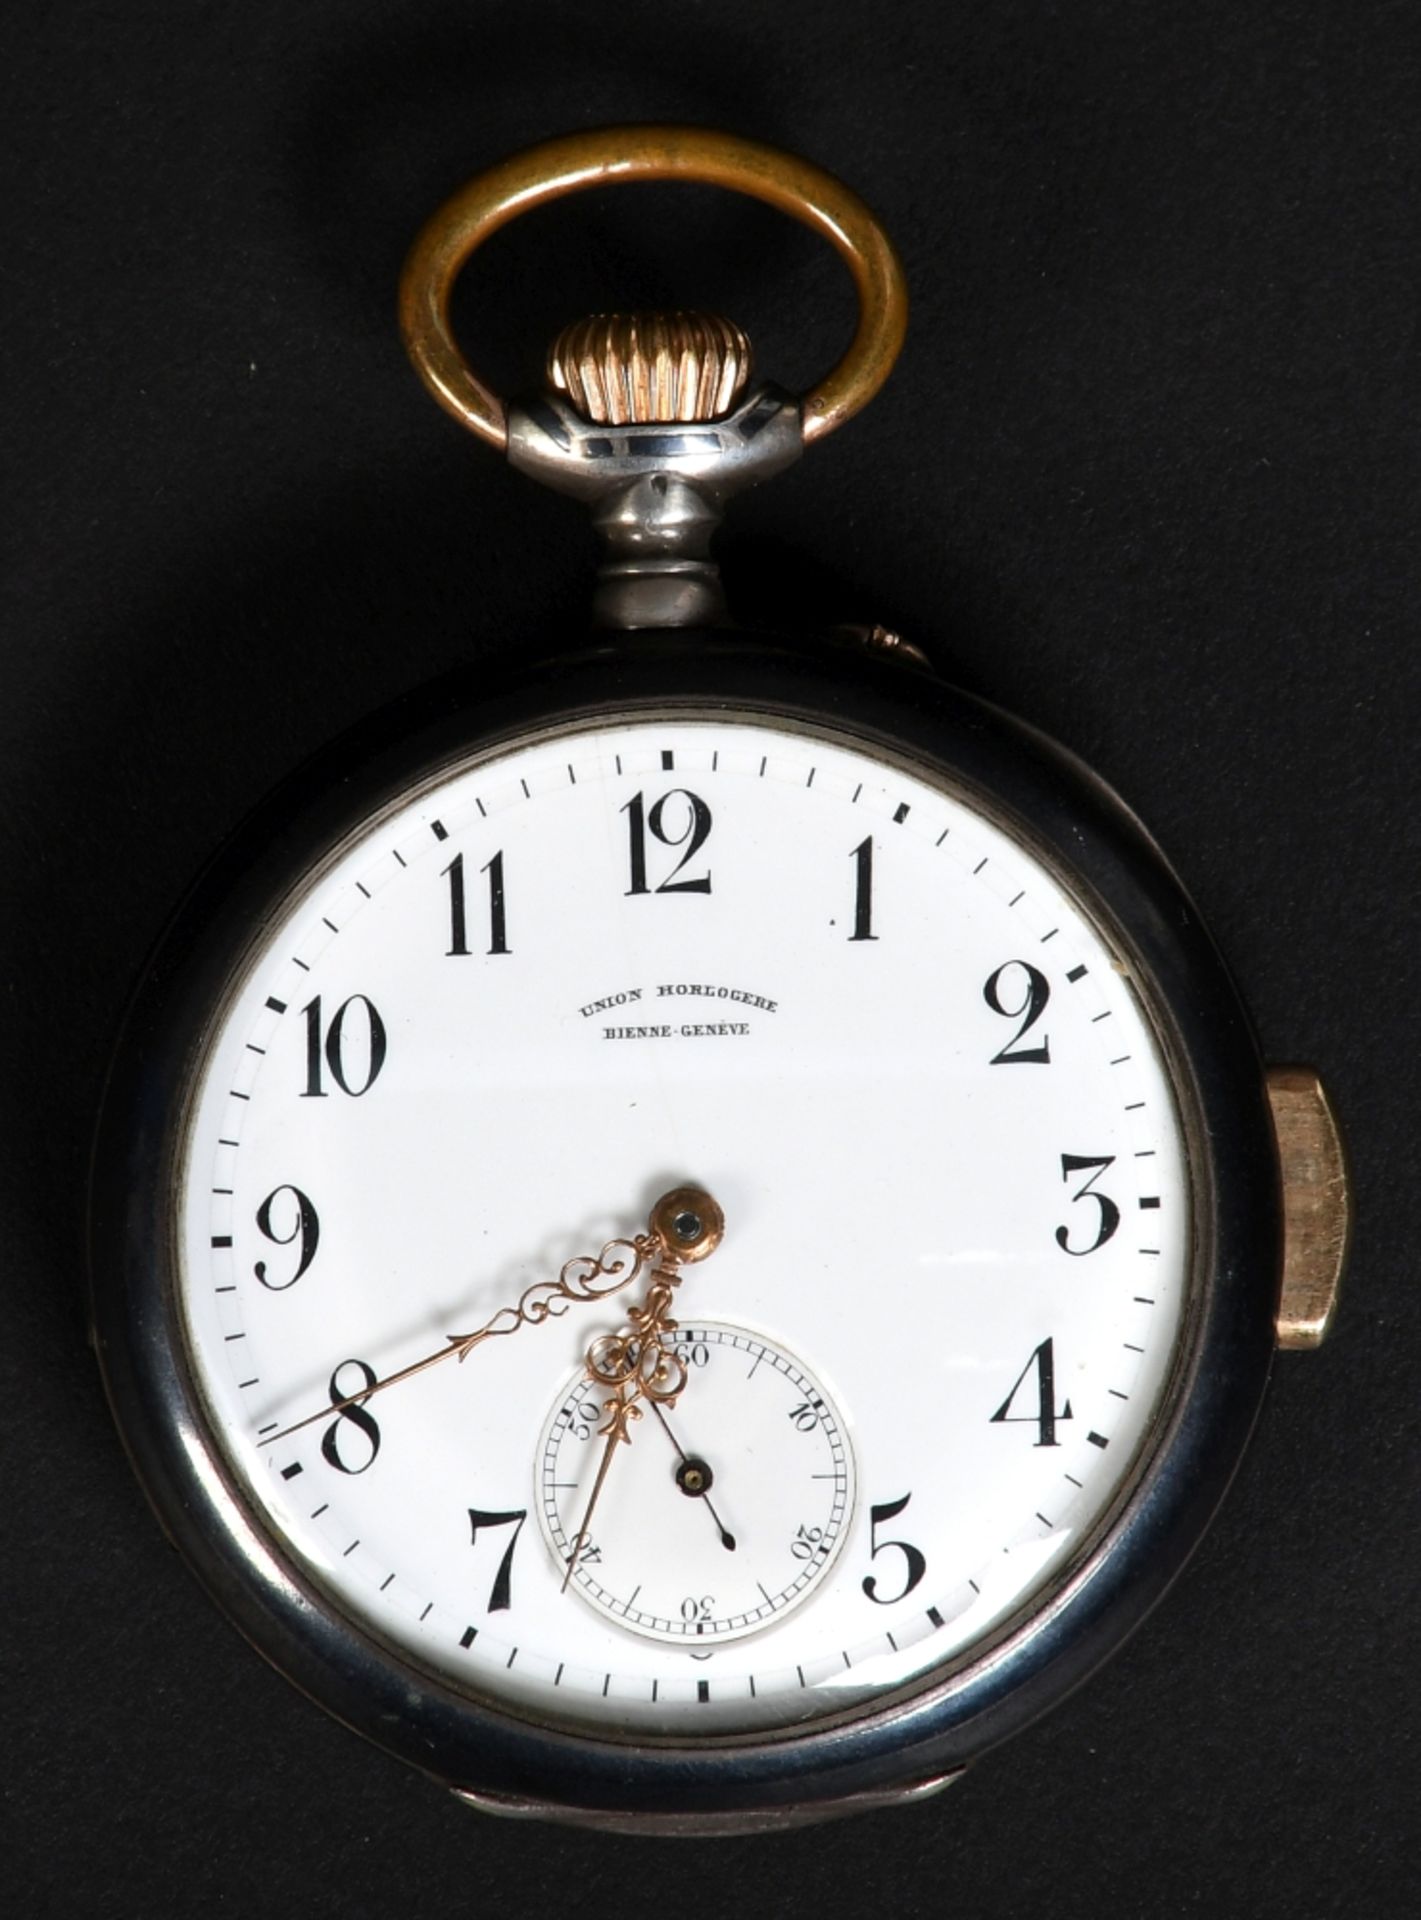 Herrentaschenuhr mit Minutenrepetition "Union Horlogere Bienne Genève"